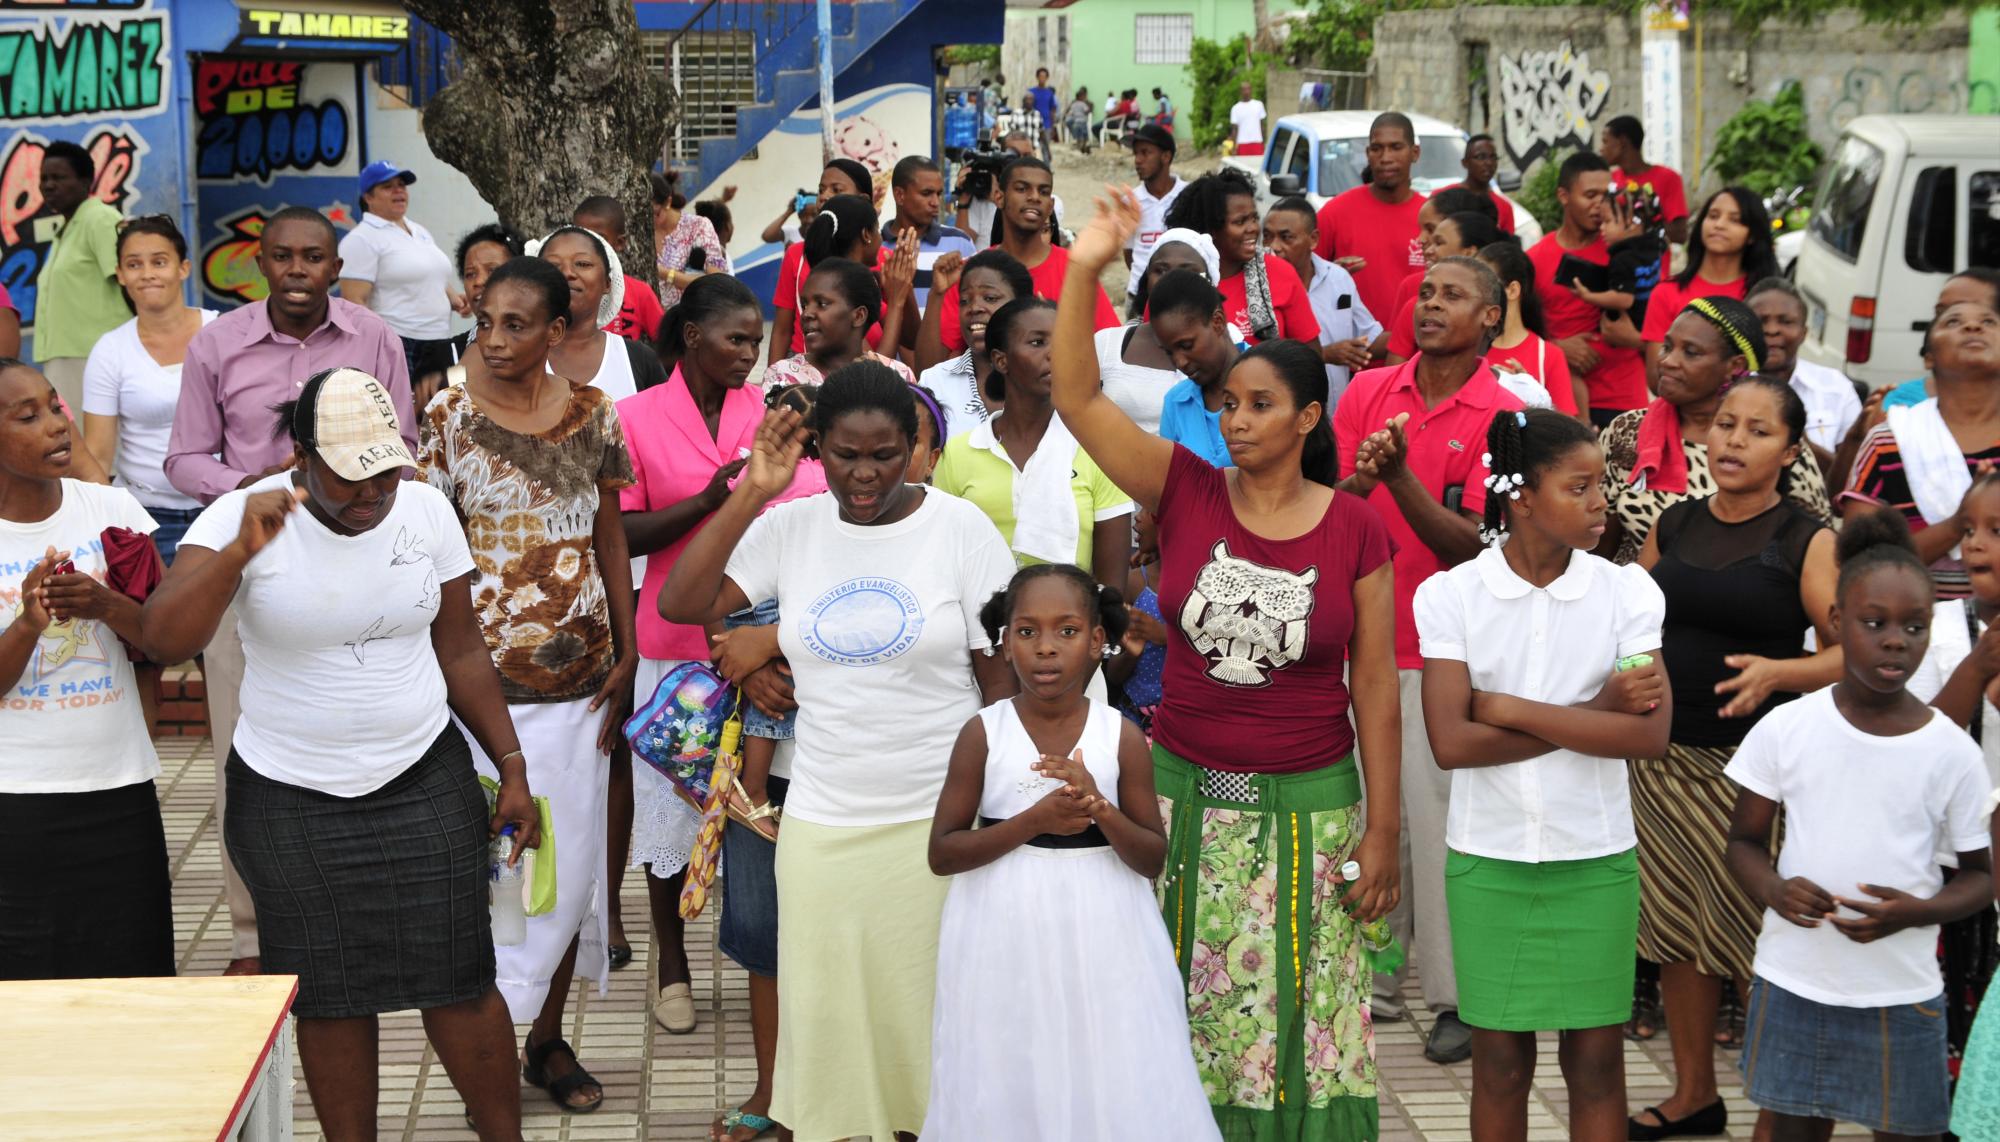 La iglesia cristiana de Batey Bienvenido, en Manoguayabo, realizaron este jueves la Marcha de la Biblia para conmemorar el Día de la Biblia por toda la comunidad cristiana dominicana. El Día de la Biblia se celebra el último sábado de septiembre y convoca al estudio del libro sagrado de la religión cristiana.